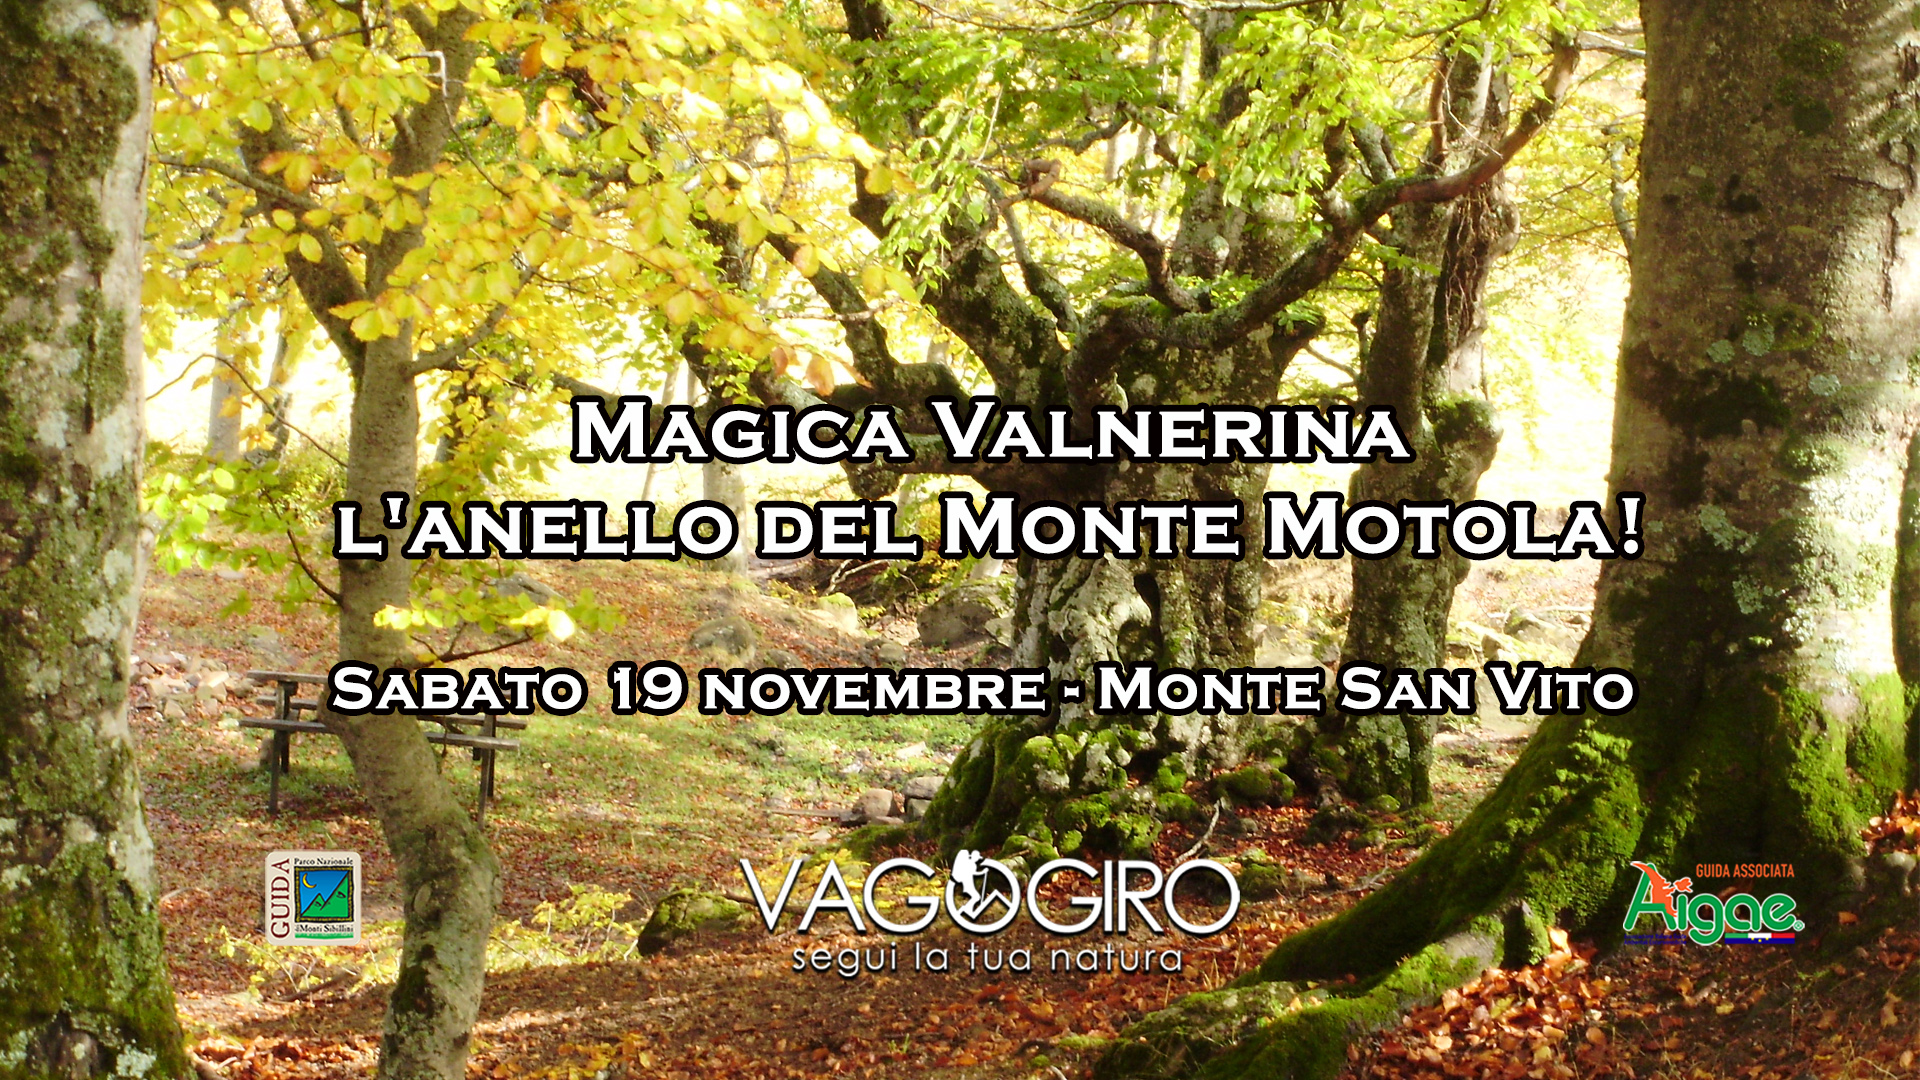 Magica Valnerina: l'anello del Monte Motola da Monte San Vito